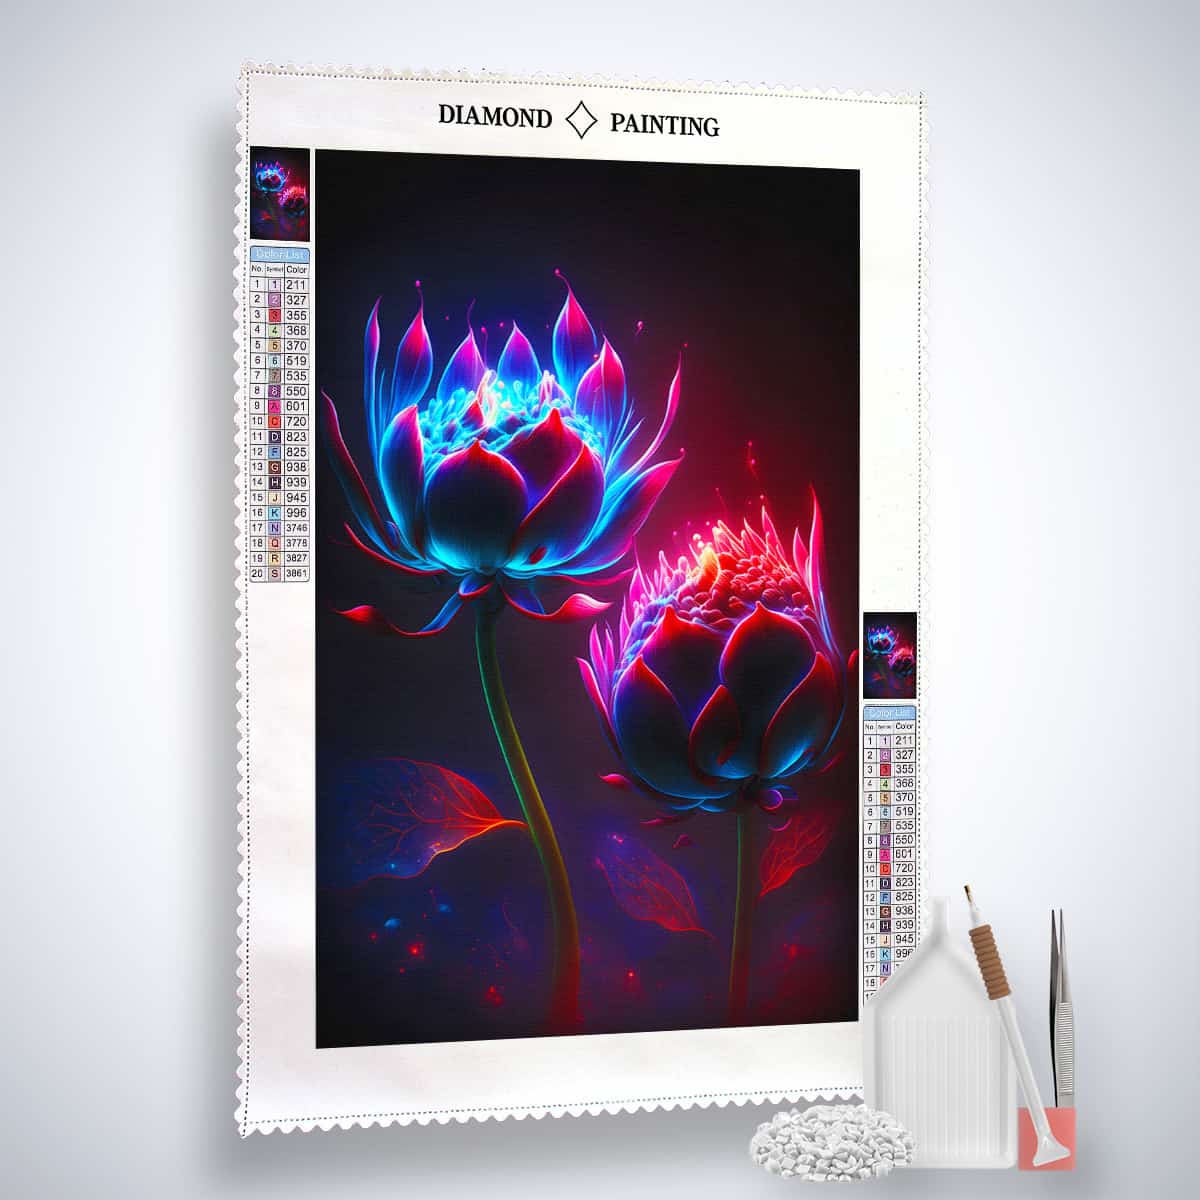 Diamond Painting - Blumenköpfe bei Nacht - gedruckt in Ultra-HD - Blumen, Neu eingetroffen, Vertikal